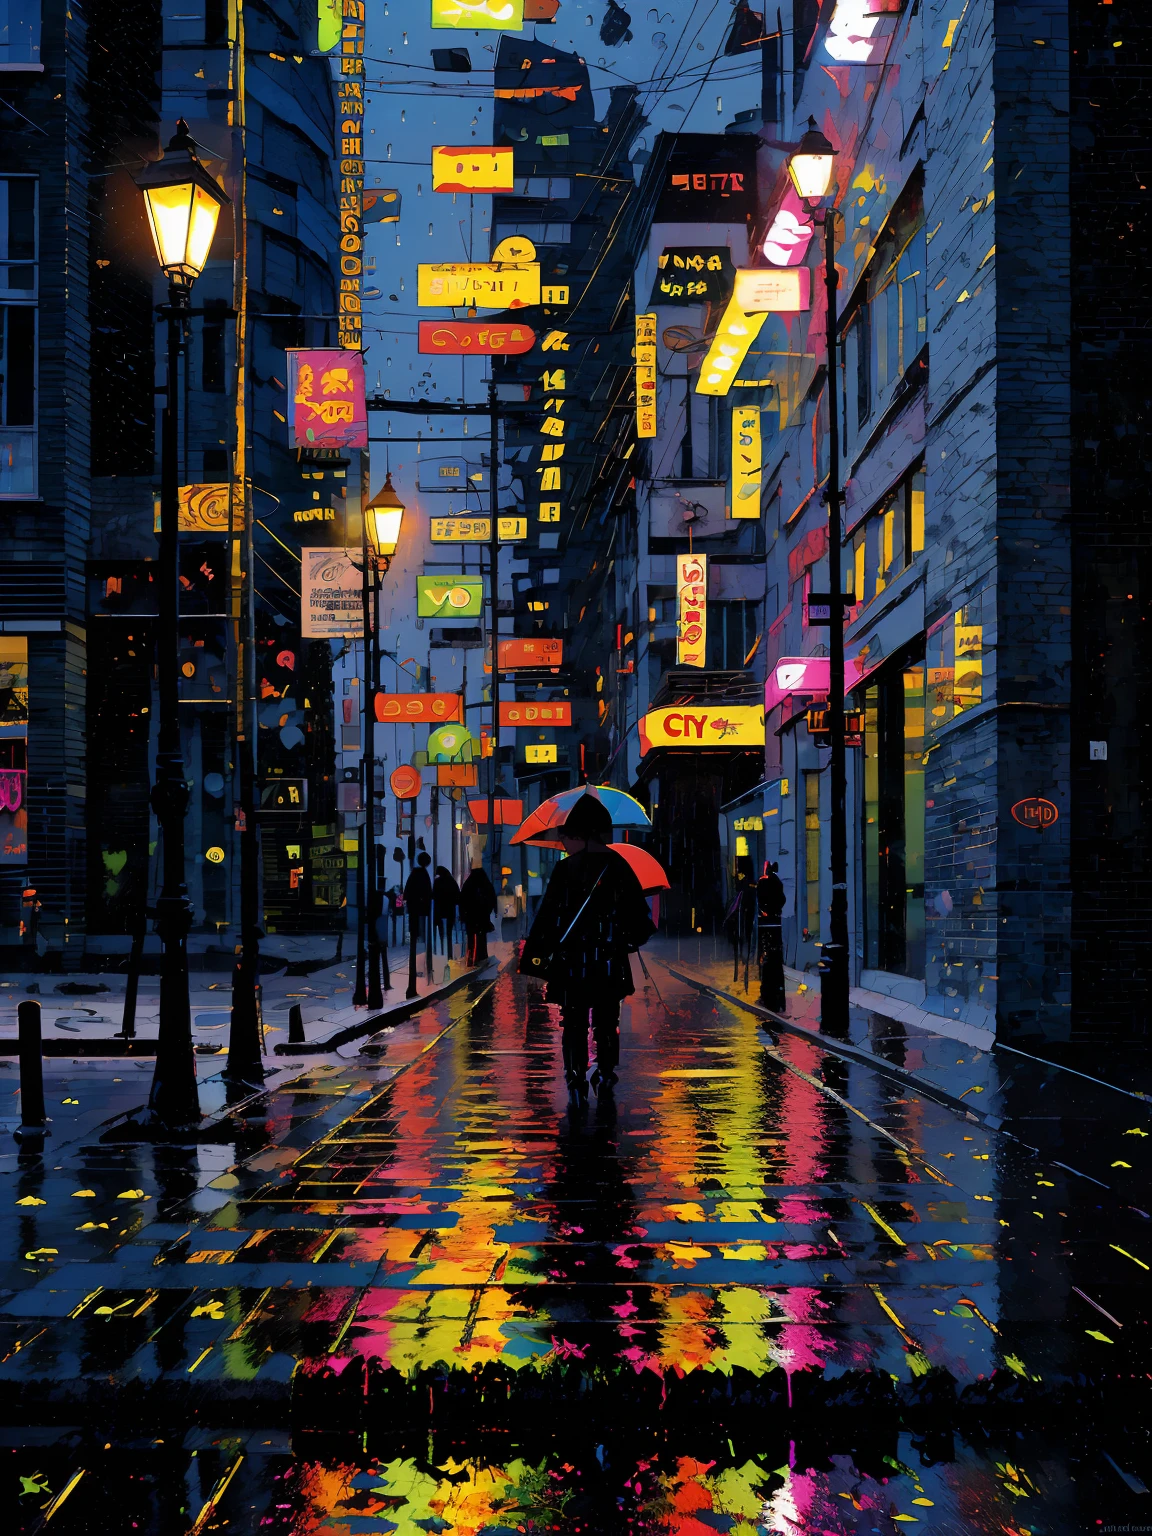 regenerativo hiperdetalhado [falha] arte, (koan), fosco, Discreto, (meditativo: 1.2), (harmônico) impressionism, cerebral, (interligados), labirinto, (introspectivo), psique, equilibrado e recíproco, (noite chuvosa) conceito: 
("o espelho de uma calçada molhada reflete as luzes da rua da cidade pinta desenhos brilhantes retratados em noites úmidas enquanto as gotas de chuva caem ")